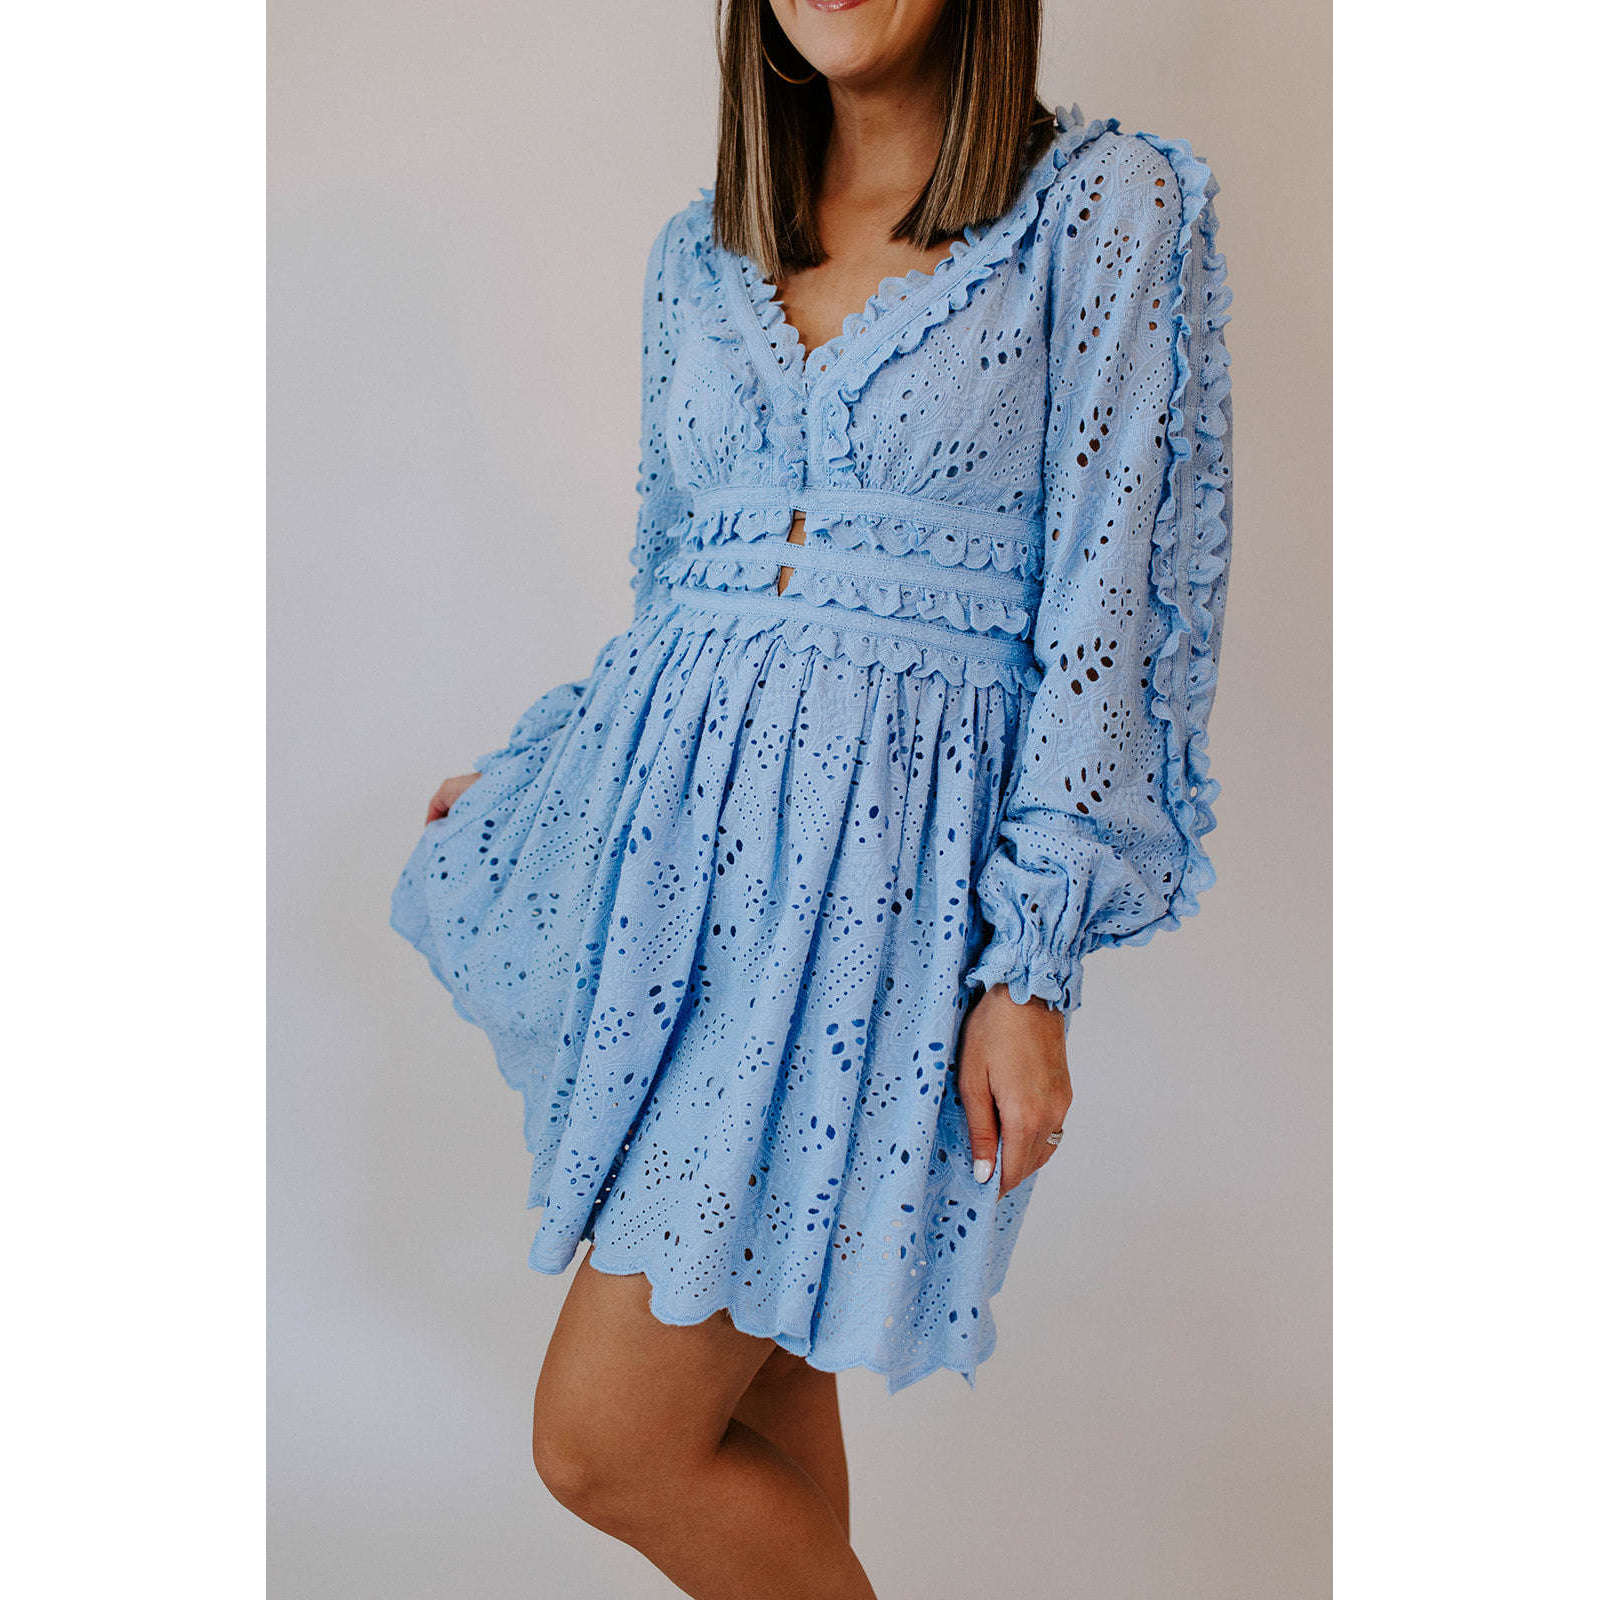 8.28 Boutique:ALLISON New York,Allison Taylor Lace Mini Dress,Dress